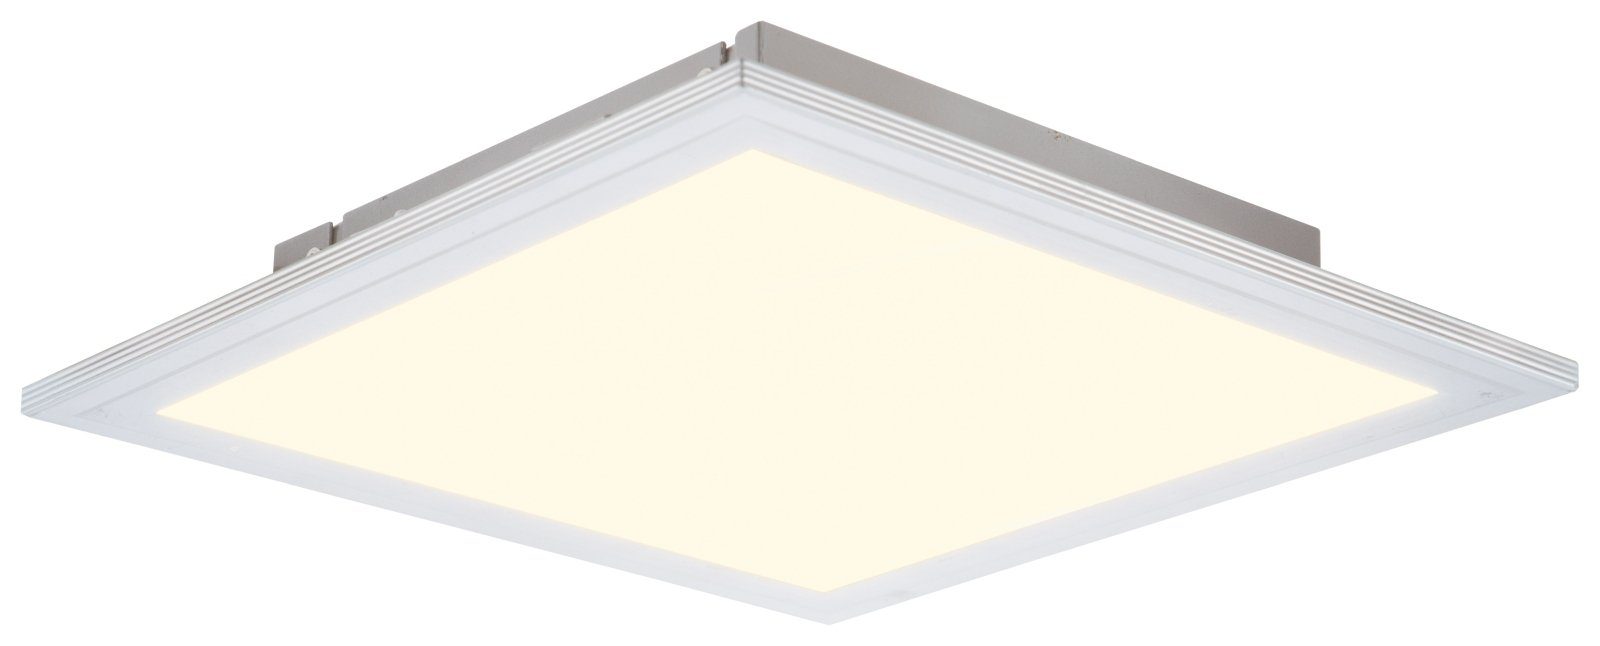 bmf-versand Deckenleuchte Nino Leuchten Deckenleuchte LED Flur Wohnzimmer Deckenlampe eckig 30